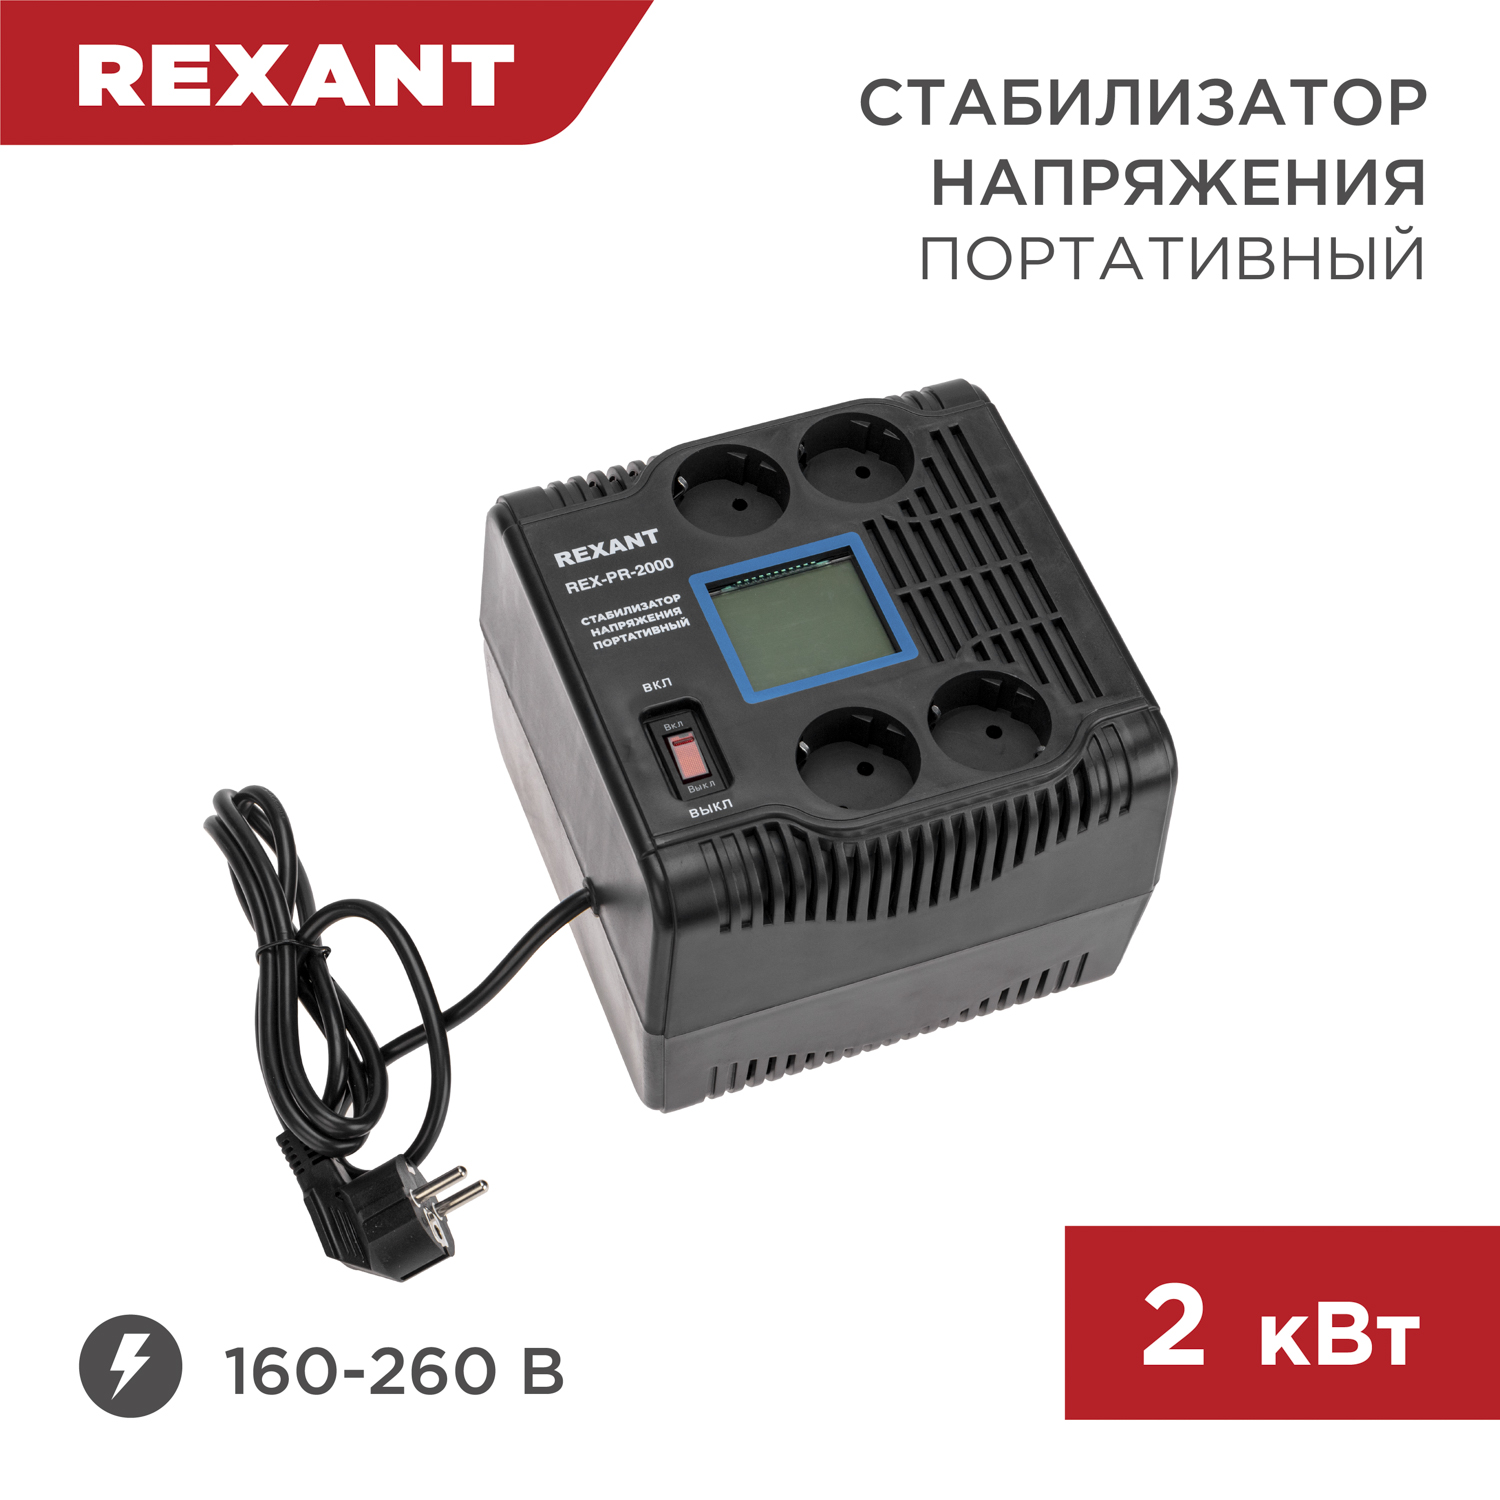 Стабилизатор напряжения портативный REXANT REX-PR-2000 11-5032